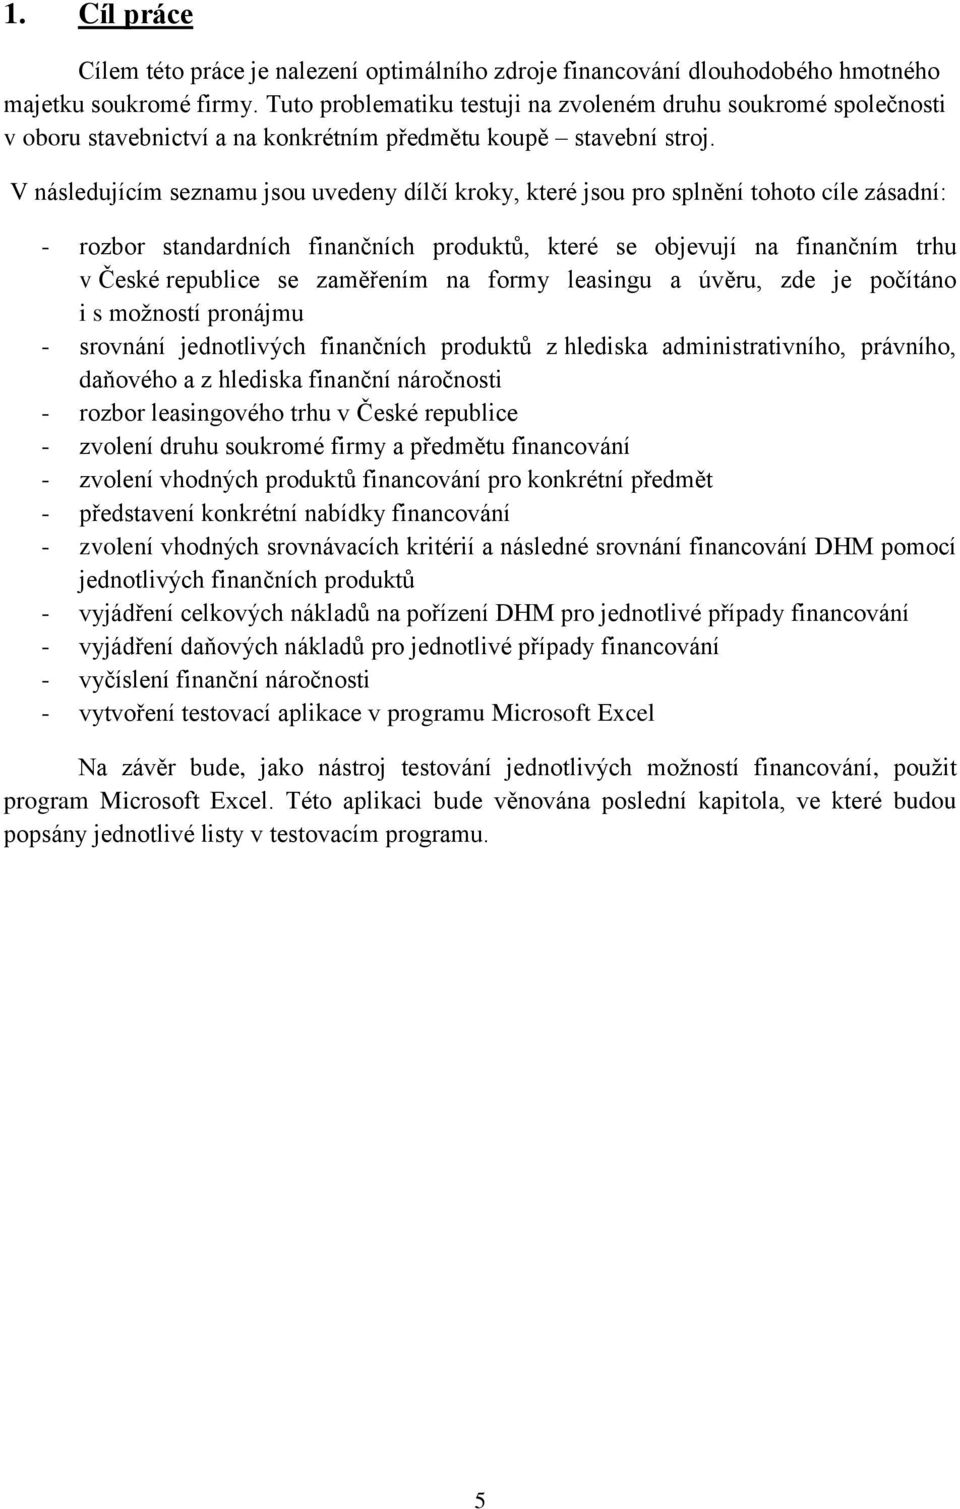 V následujícím seznamu jsou uvedeny dílčí kroky, které jsou pro splnění tohoto cíle zásadní: - rozbor standardních finančních produktů, které se objevují na finančním trhu v České republice se